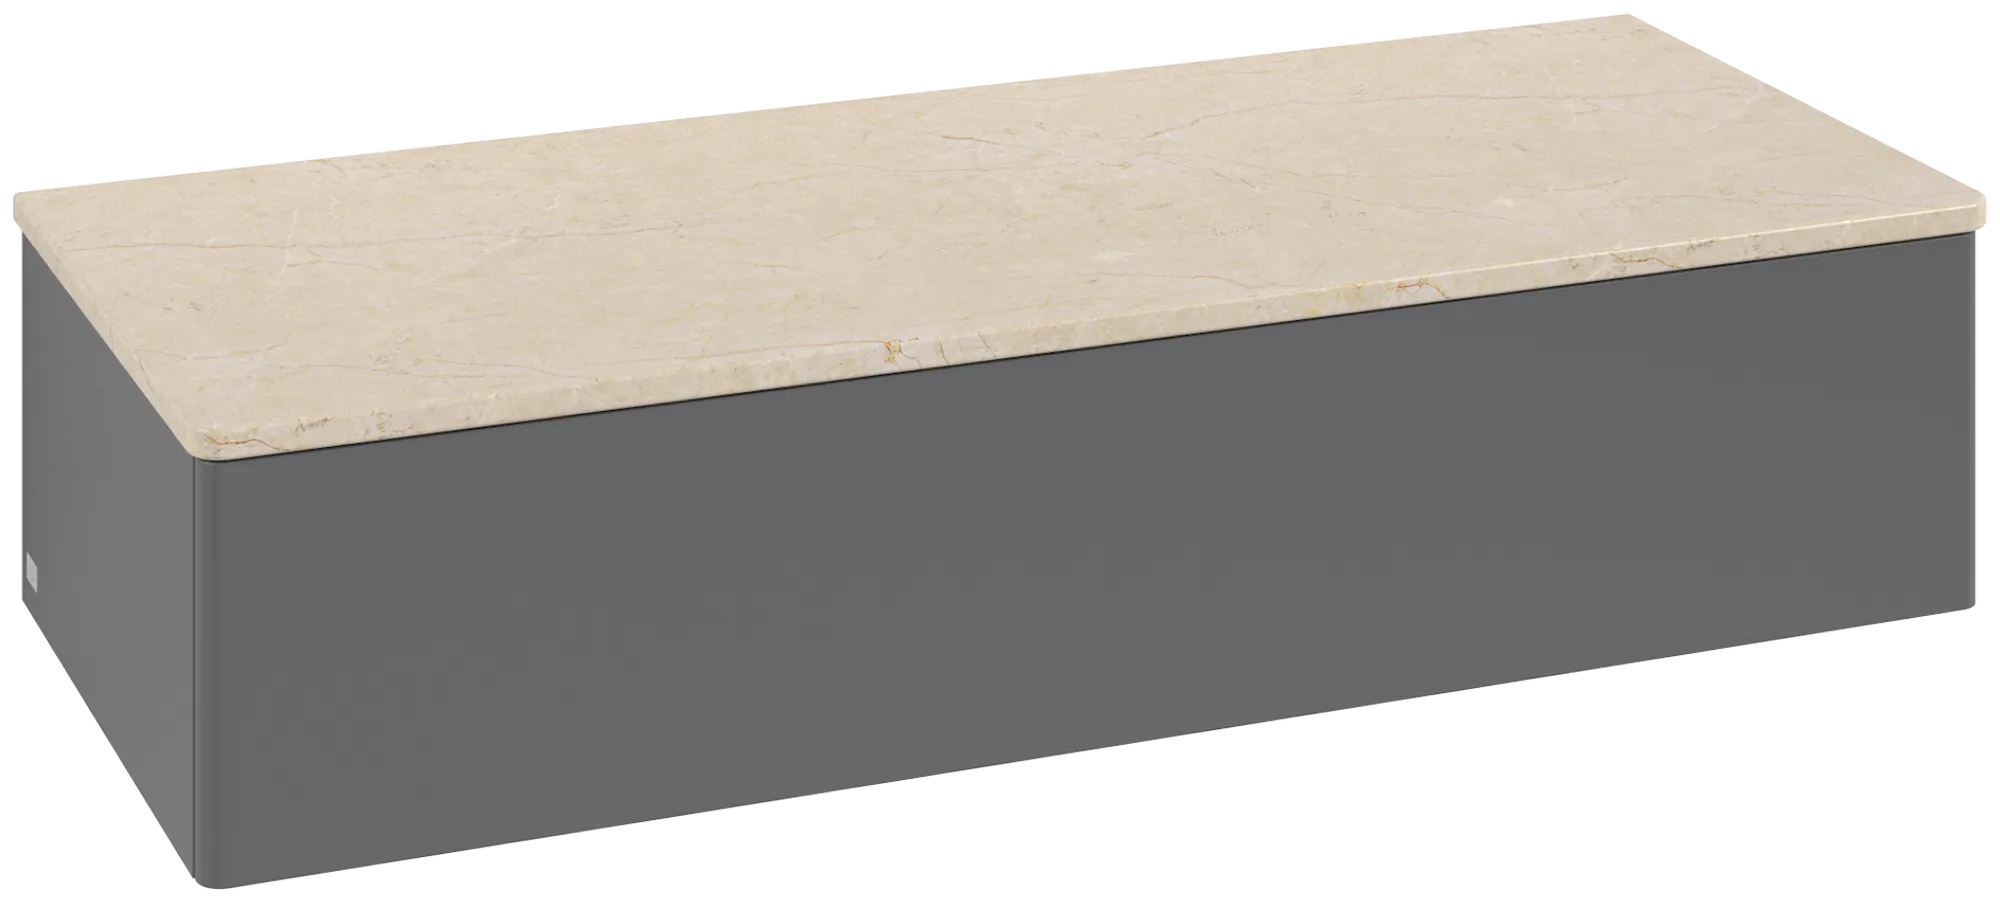 Bild von VILLEROY BOCH Antao Sideboard, mit Beleuchtung, 1 Auszug, 1200 x 268 x 500 mm, Front ohne Struktur, Anthracite Matt Lacquer / Botticino #L41003GK